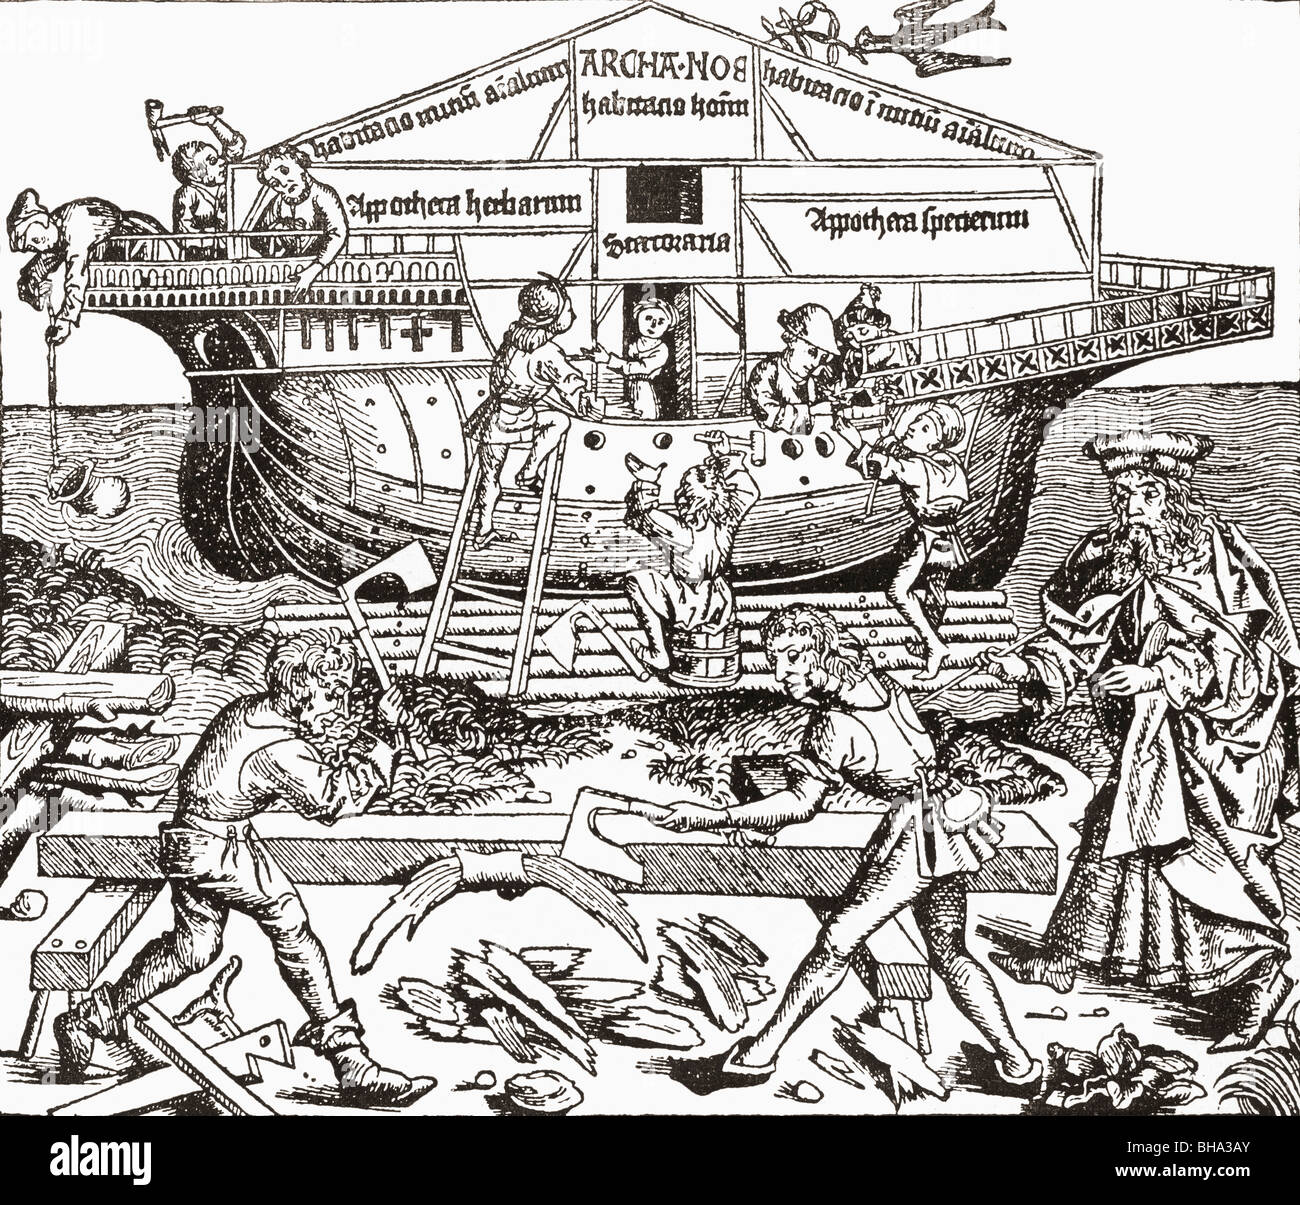 Bau der Arche von Noah beaufsichtigte. Faksimile der Holzschnitt von Schedel, Liber Chronicarum, 1493. Stockfoto